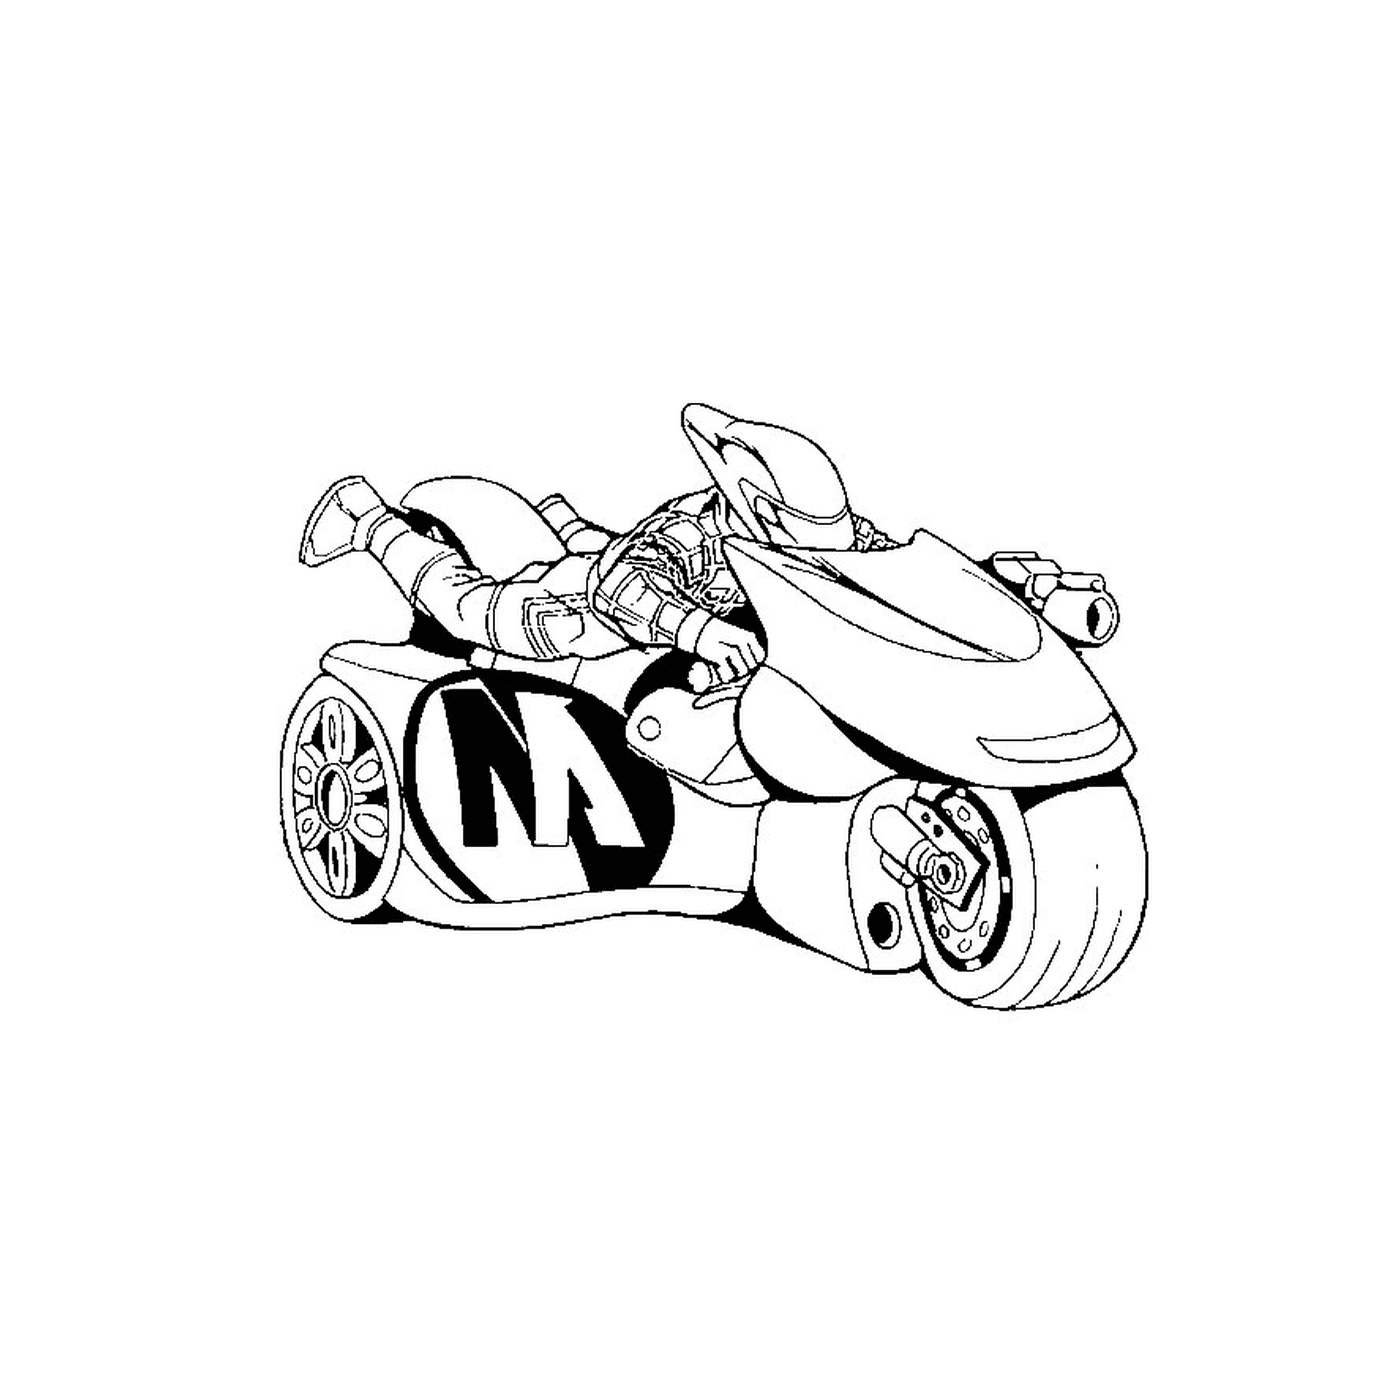  A Batman motorcycle 